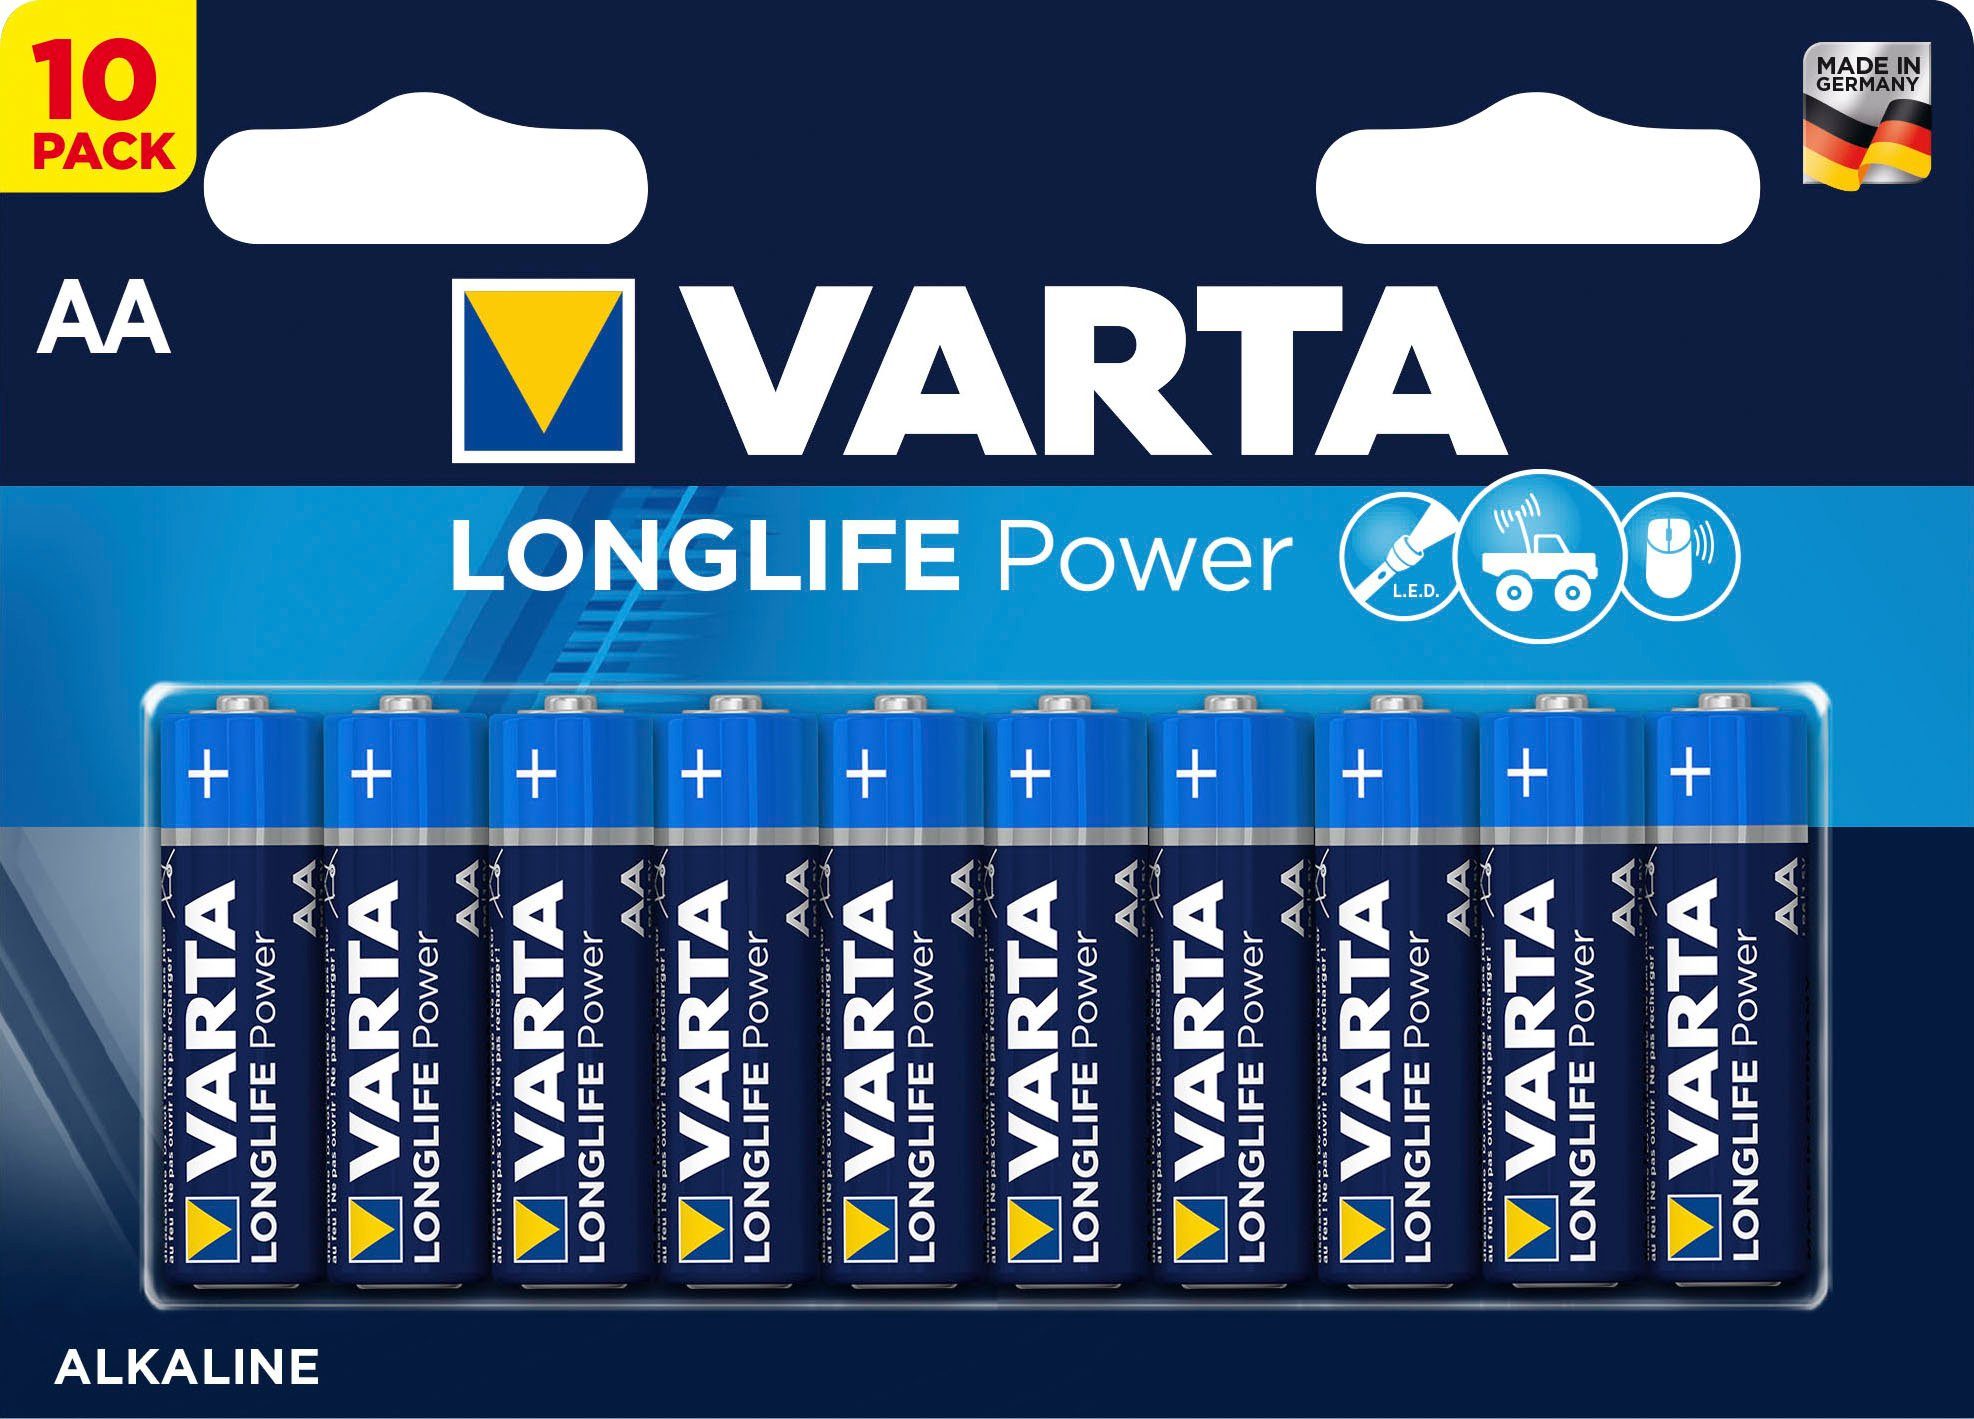 VARTA »LONGLIFE Power Alkaline Batterie AA Mignon LR6, 10er Batterien Pack  Made in Germany« Batterie, (1,5 V) online kaufen | OTTO